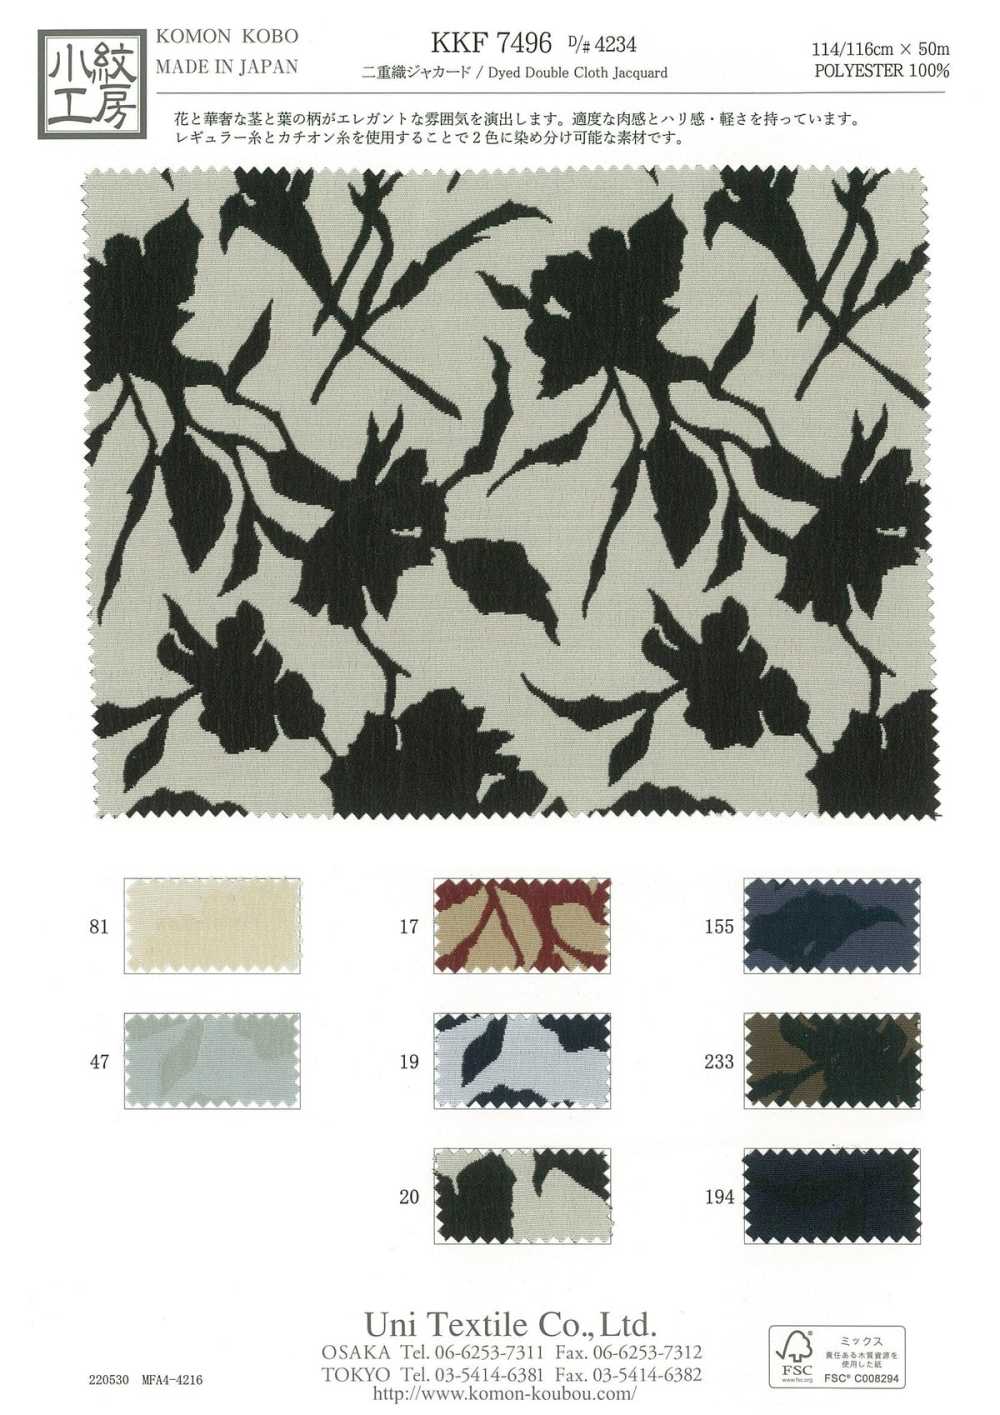 KKF7496-D-4234 Double Weave Jacquard Floral Print[Textile / Fabric] Uni Textile